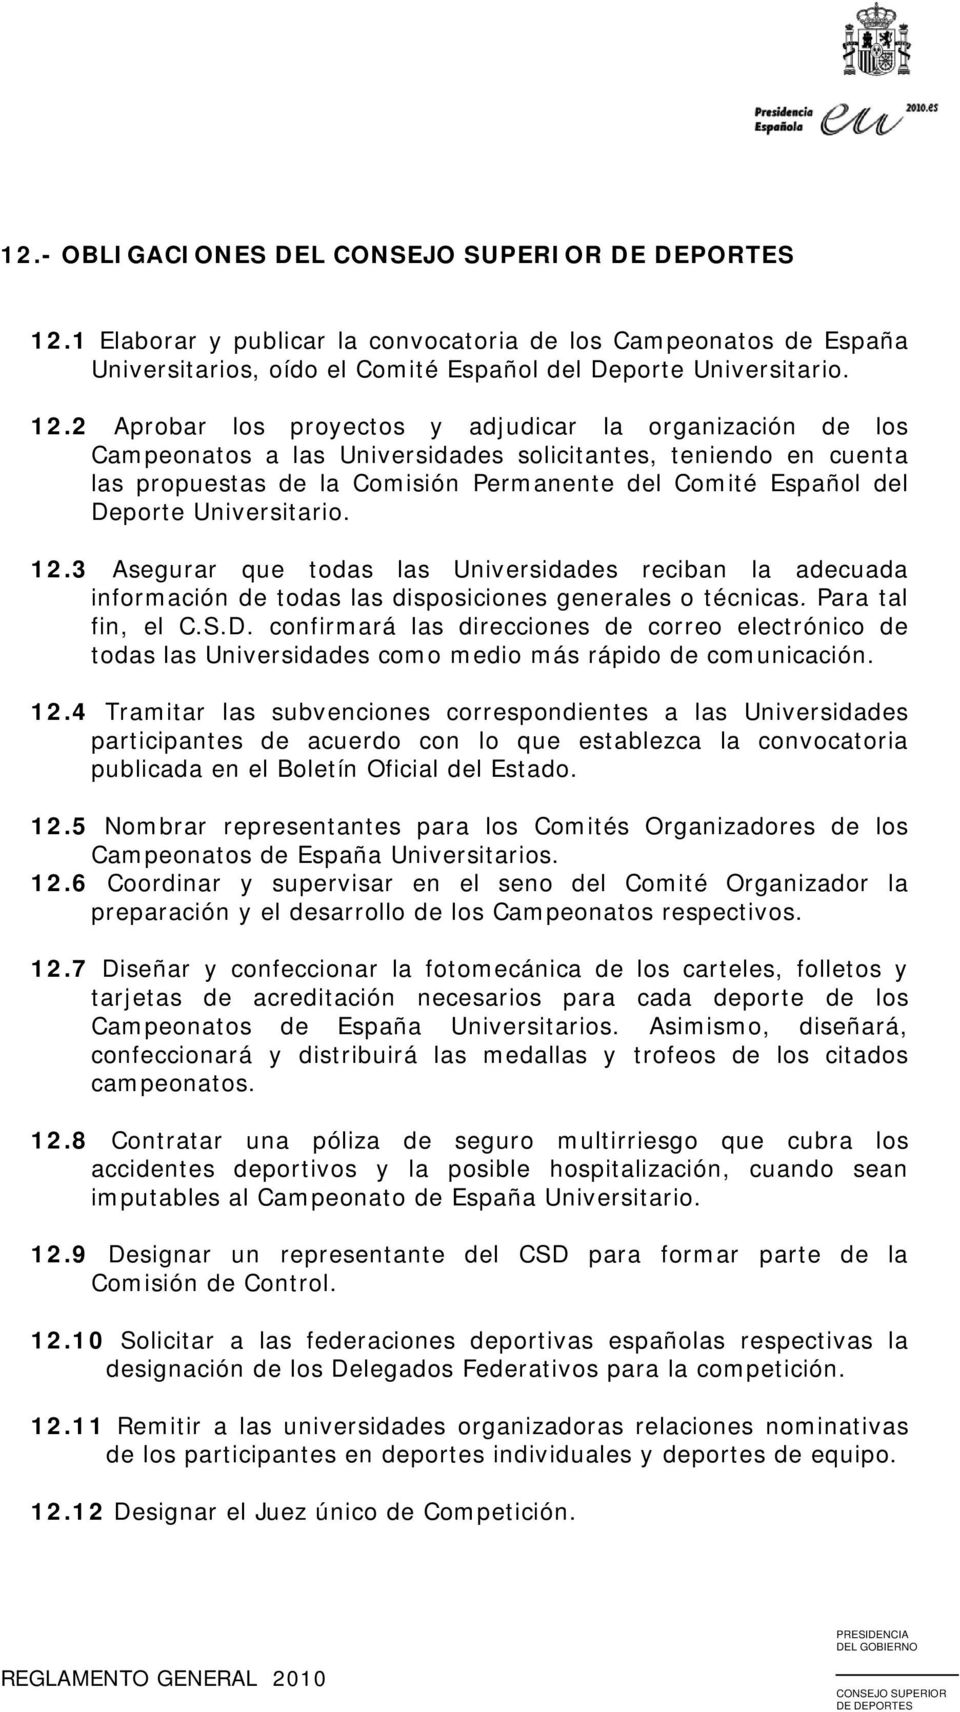 2 Aprobar los proyectos y adjudicar la organización de los Campeonatos a las Universidades solicitantes, teniendo en cuenta las propuestas de la Comisión Permanente del Comité Español del Deporte